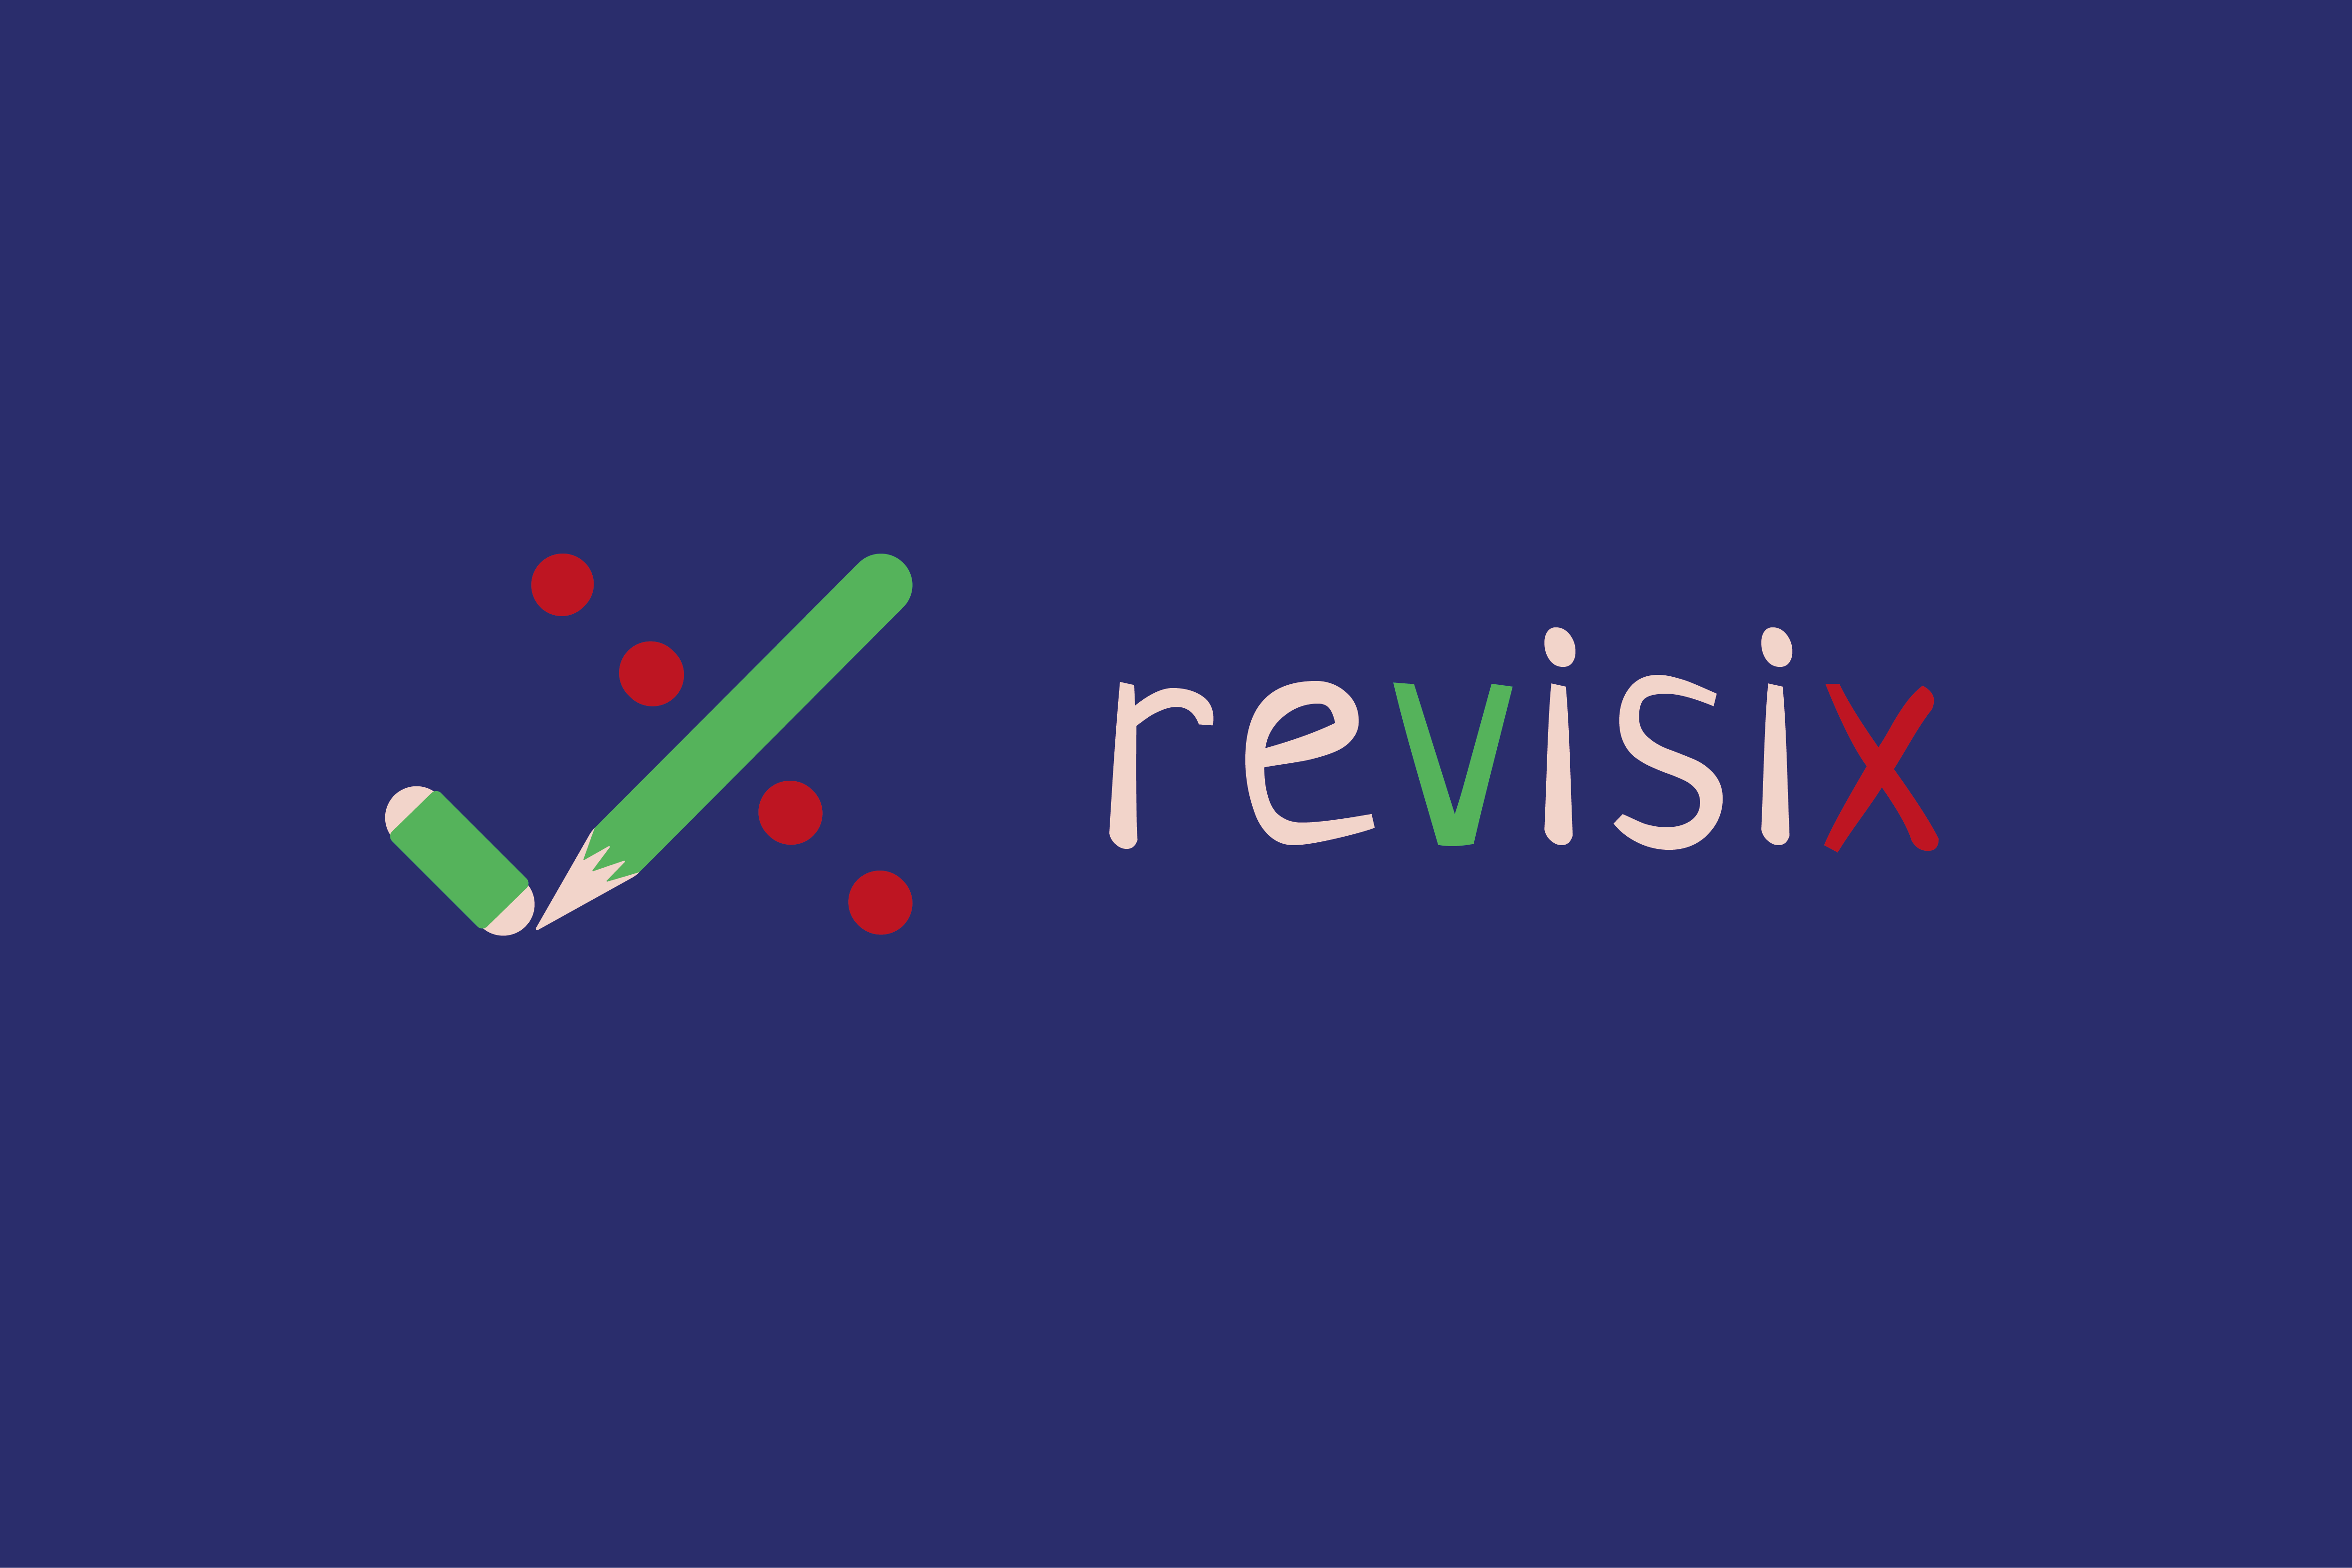 Revisix